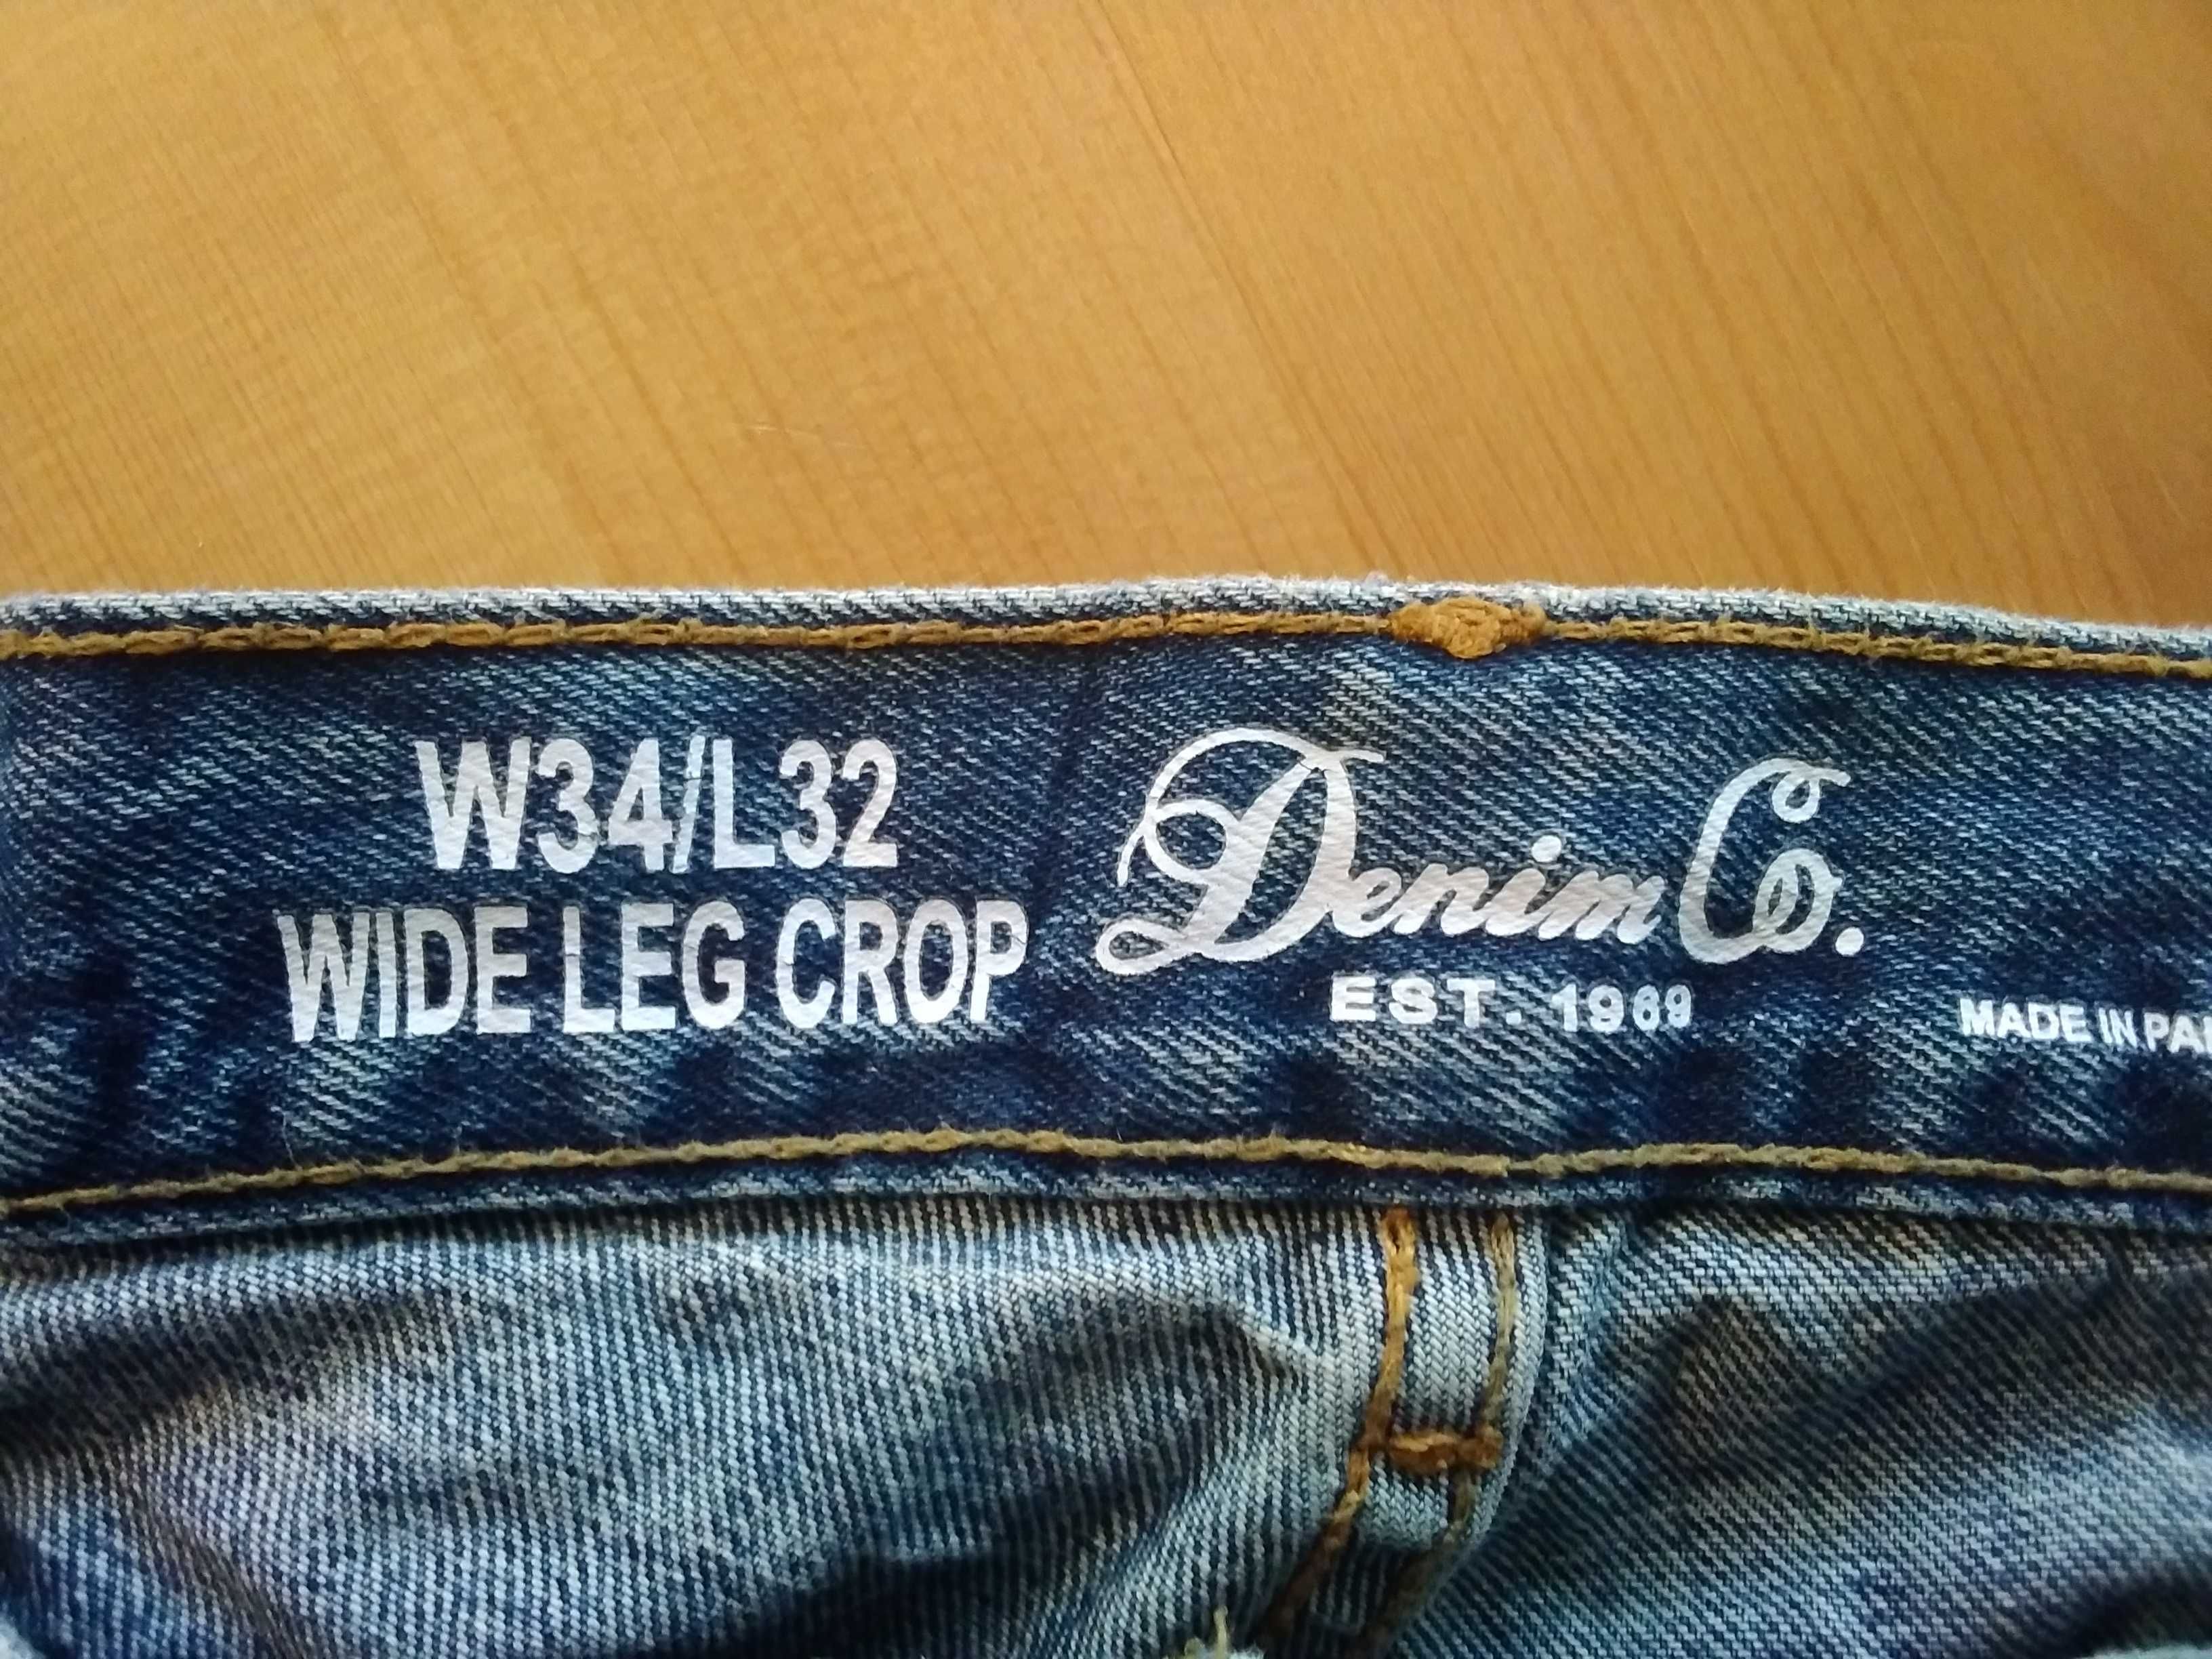 Spodnie z dziurami W34/L32 (wide leg crop)